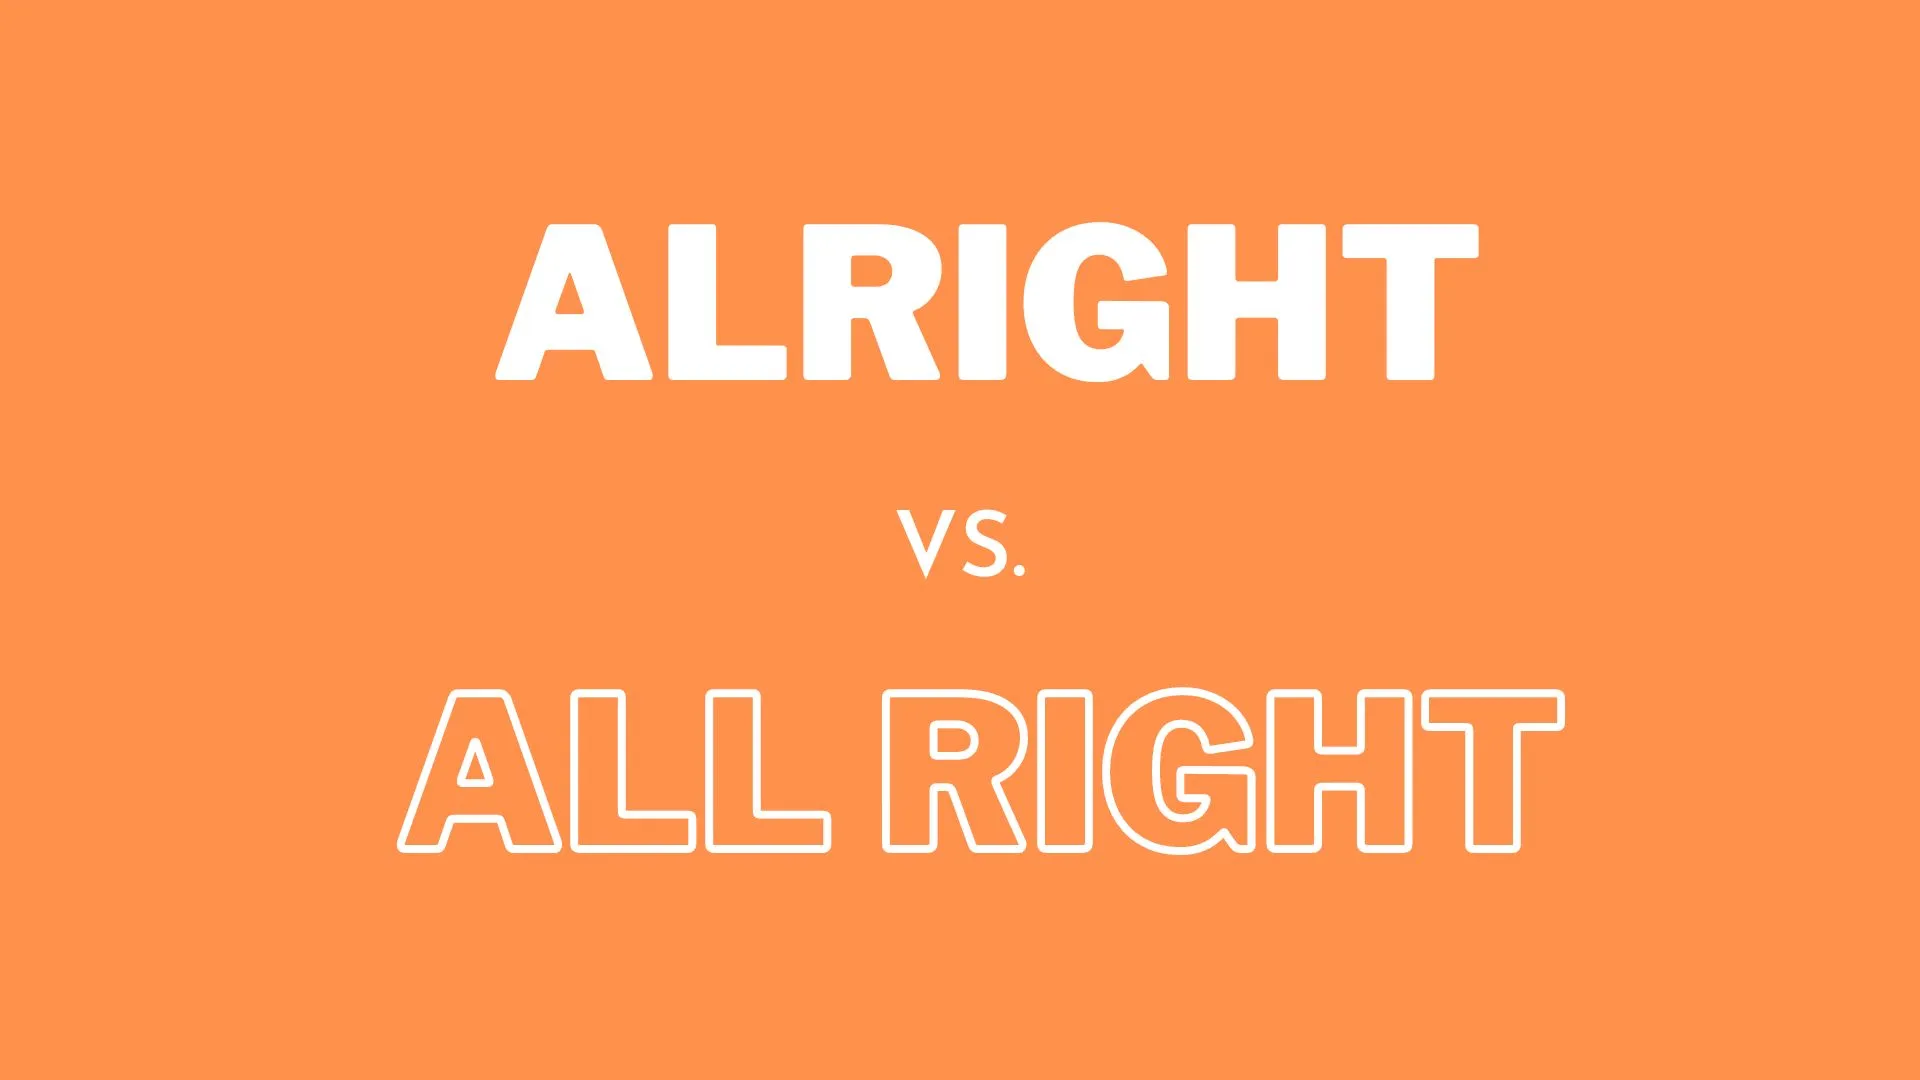 Ilustracja przedstawiająca różnicę między "all right" a "alright" w użyciu języka angielskiego dla nauczycieli i uczniów angielskiego.